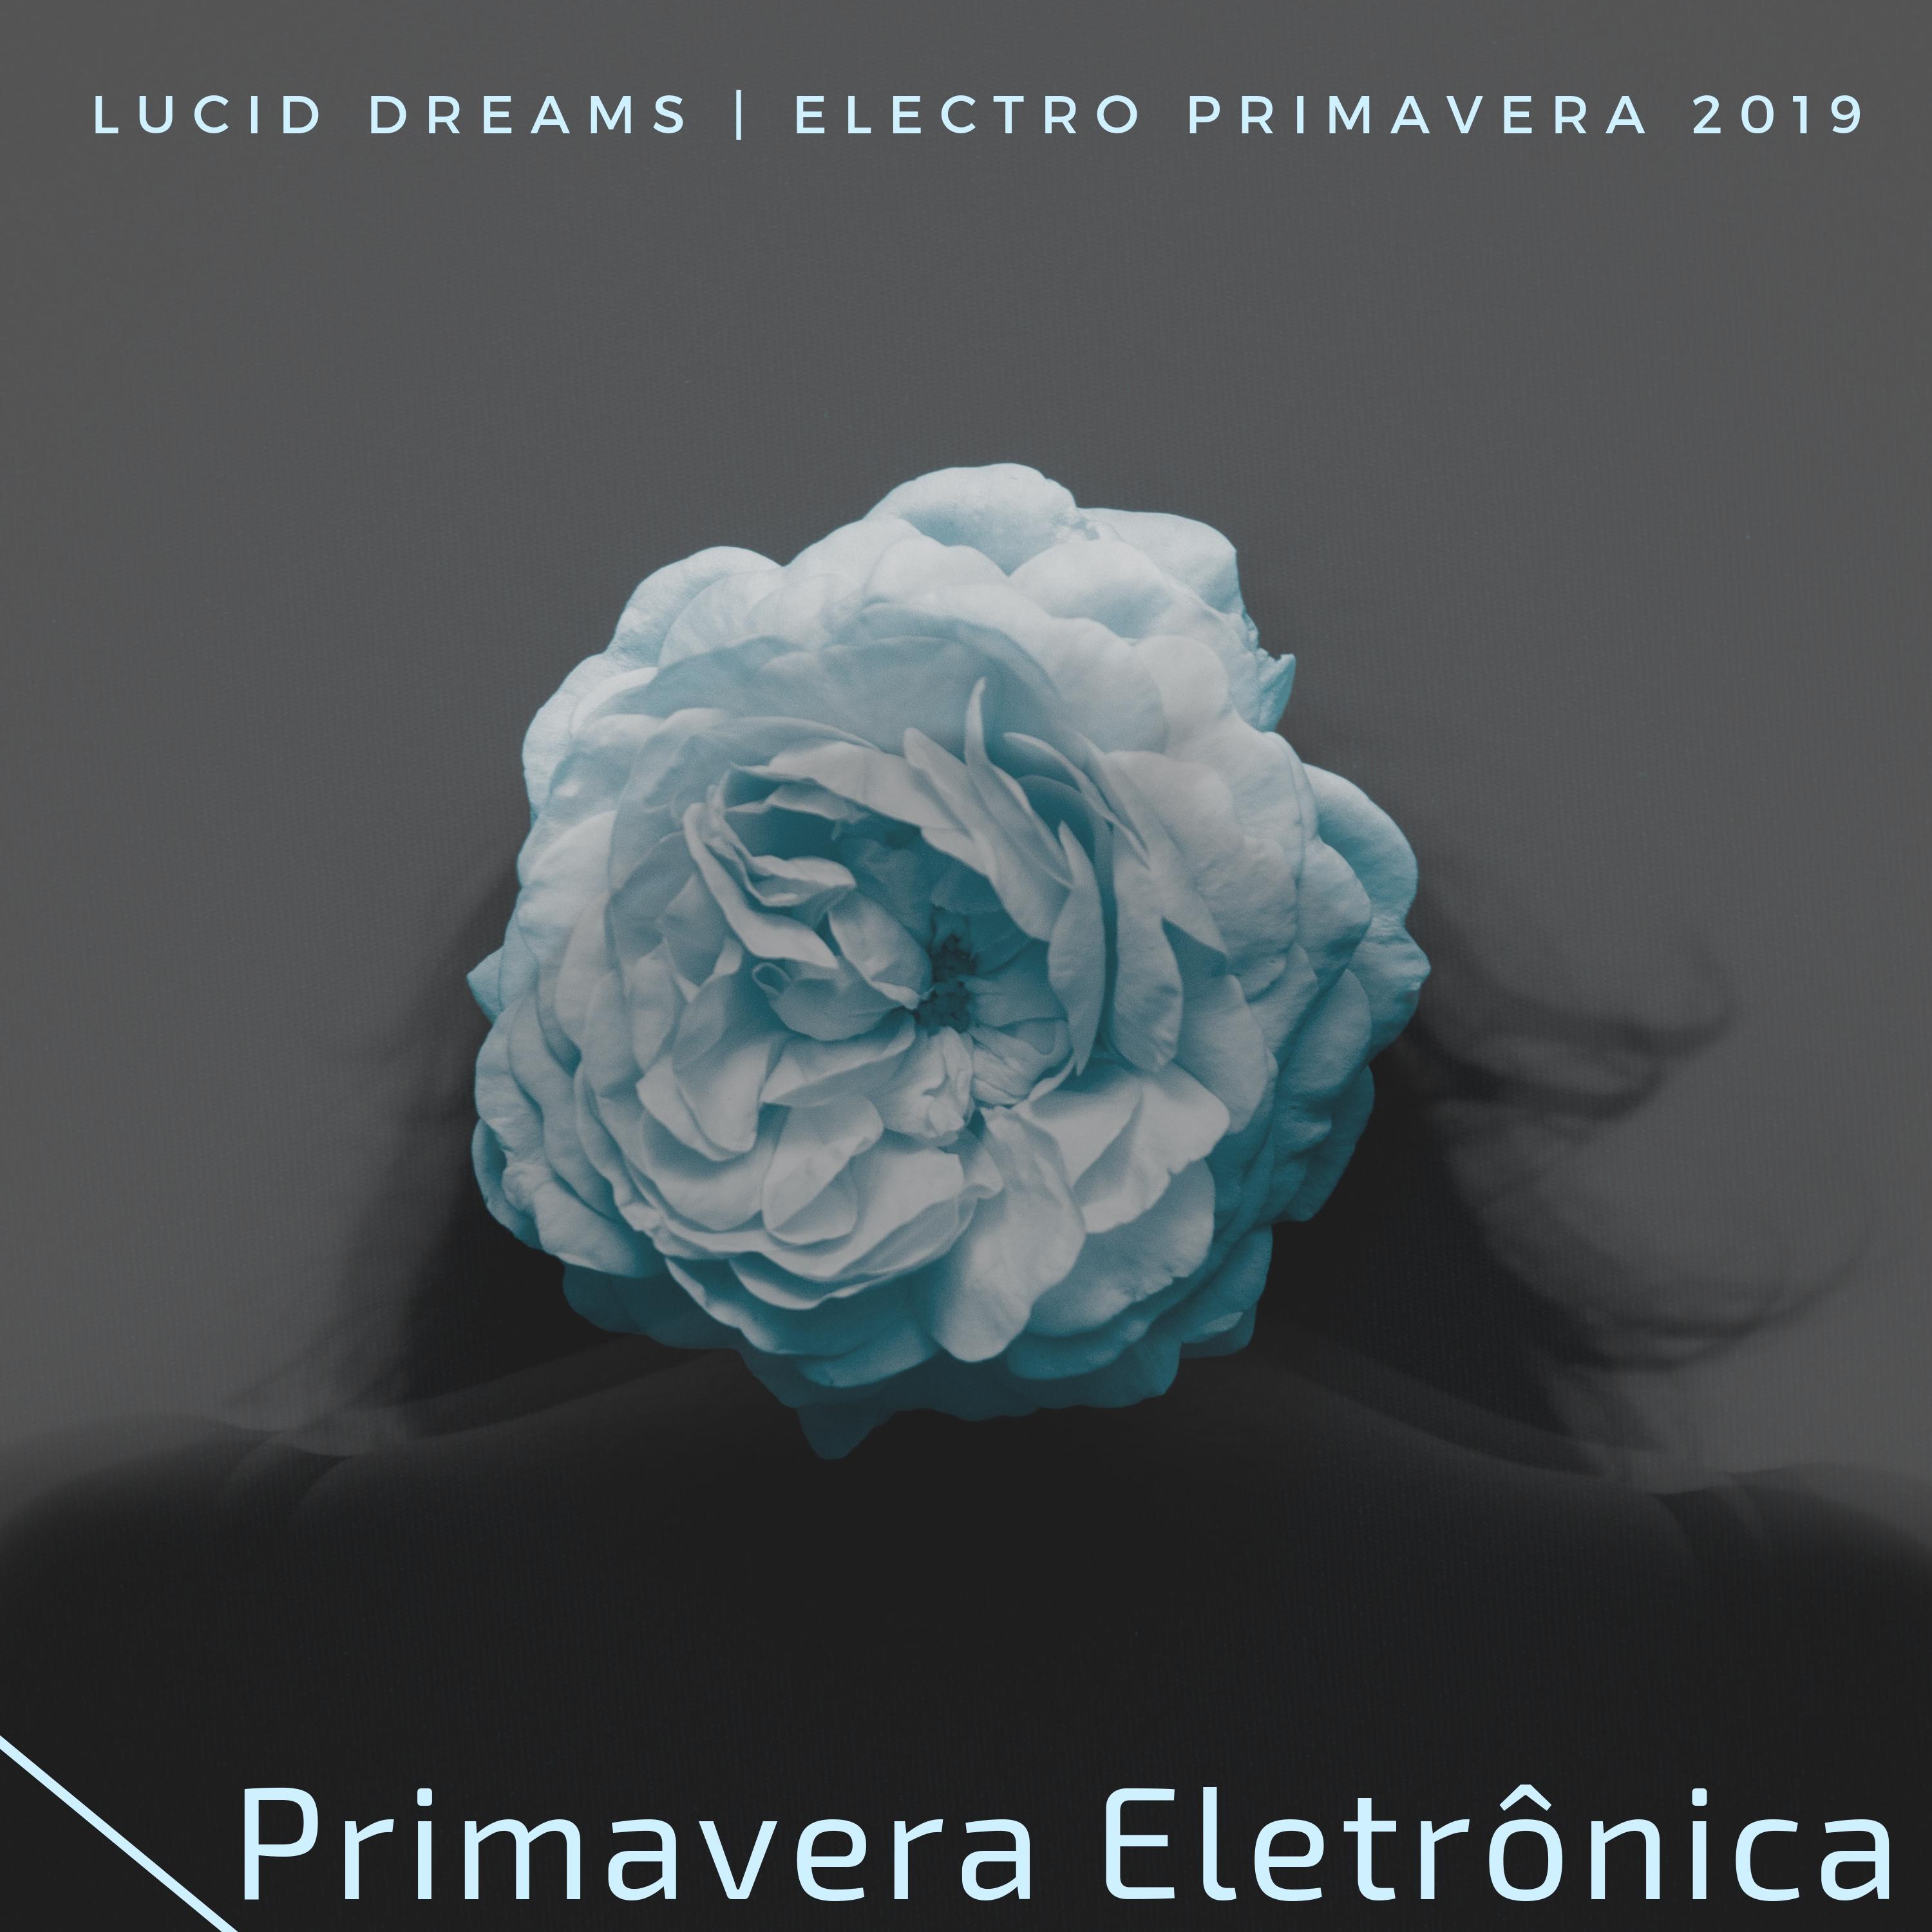 Primavera Eletrônica - Electro Primavera 2019, Lucid Dreams